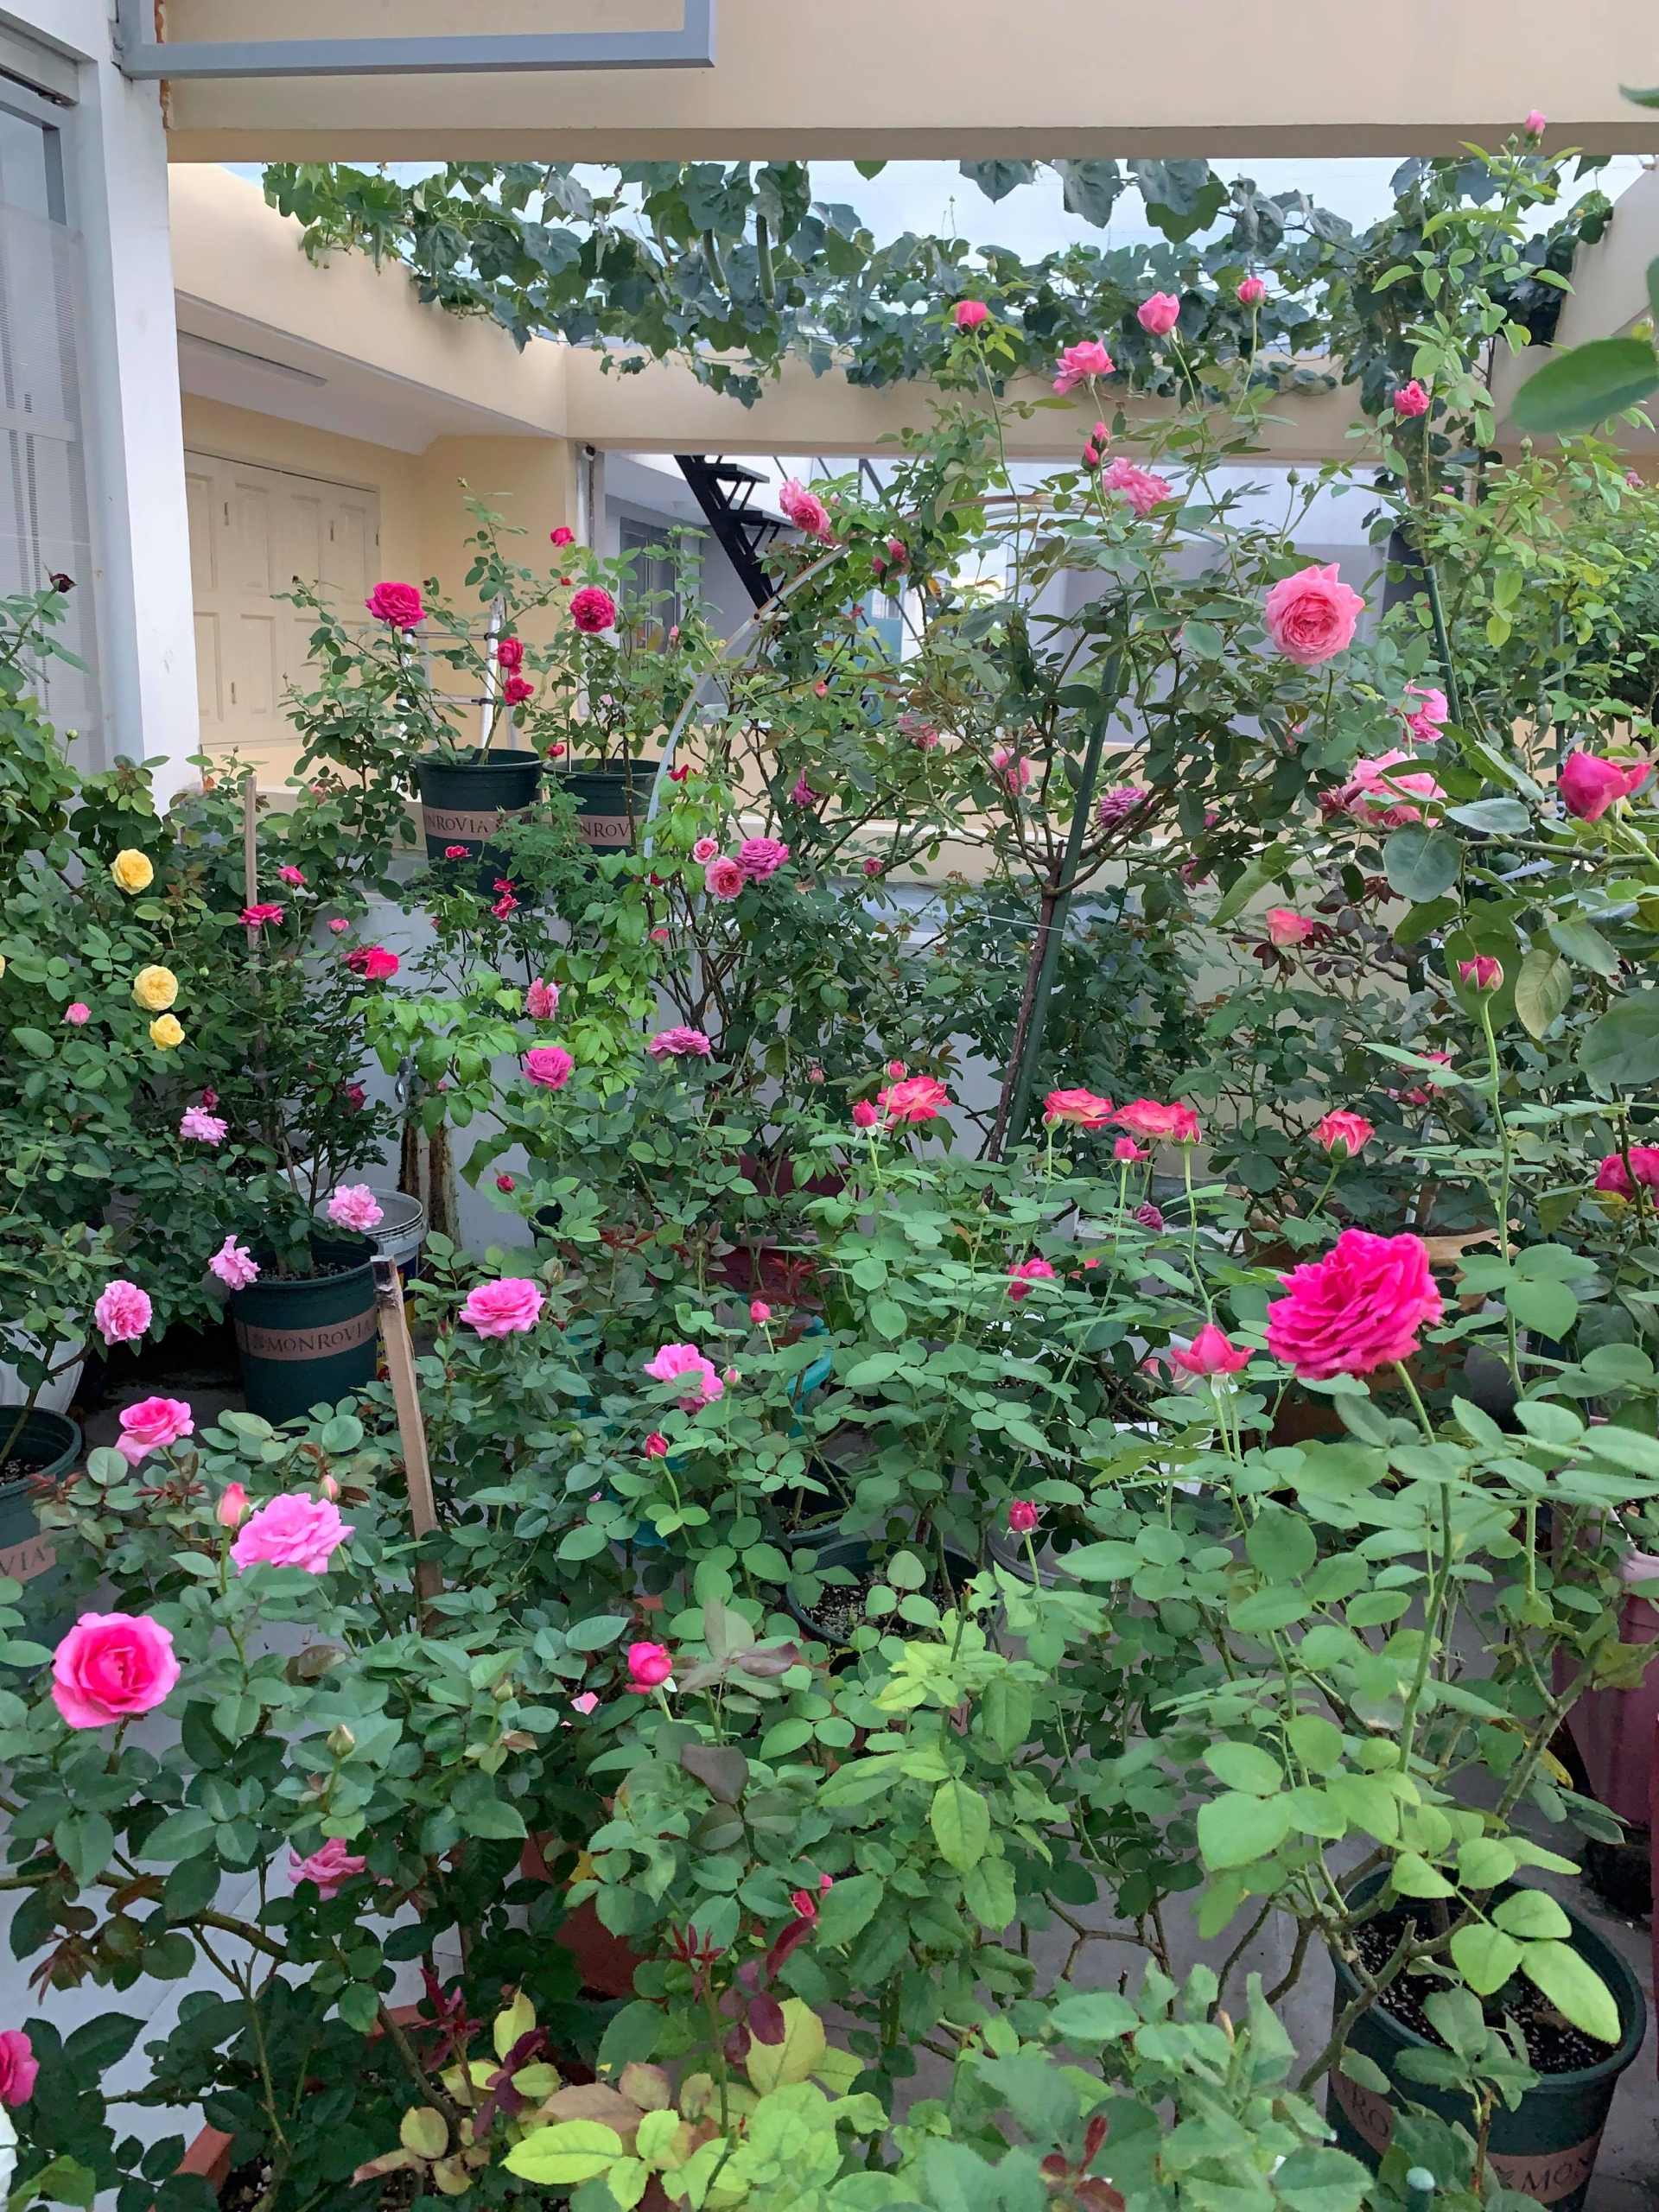 Trồng vườn hồng: Bạn có muốn tận hưởng trải nghiệm làm vườn với những cành hồng thơm ngát để tạo ra một vườn hoa thật đẹp toát lên nét thanh lịch tinh tế cho ngôi nhà của mình. Bạn sẽ không chỉ được thăng hoa cảm xúc mà còn đem lại vẻ đẹp và kiến trúc riêng độc đáo cho khu vườn của mình.